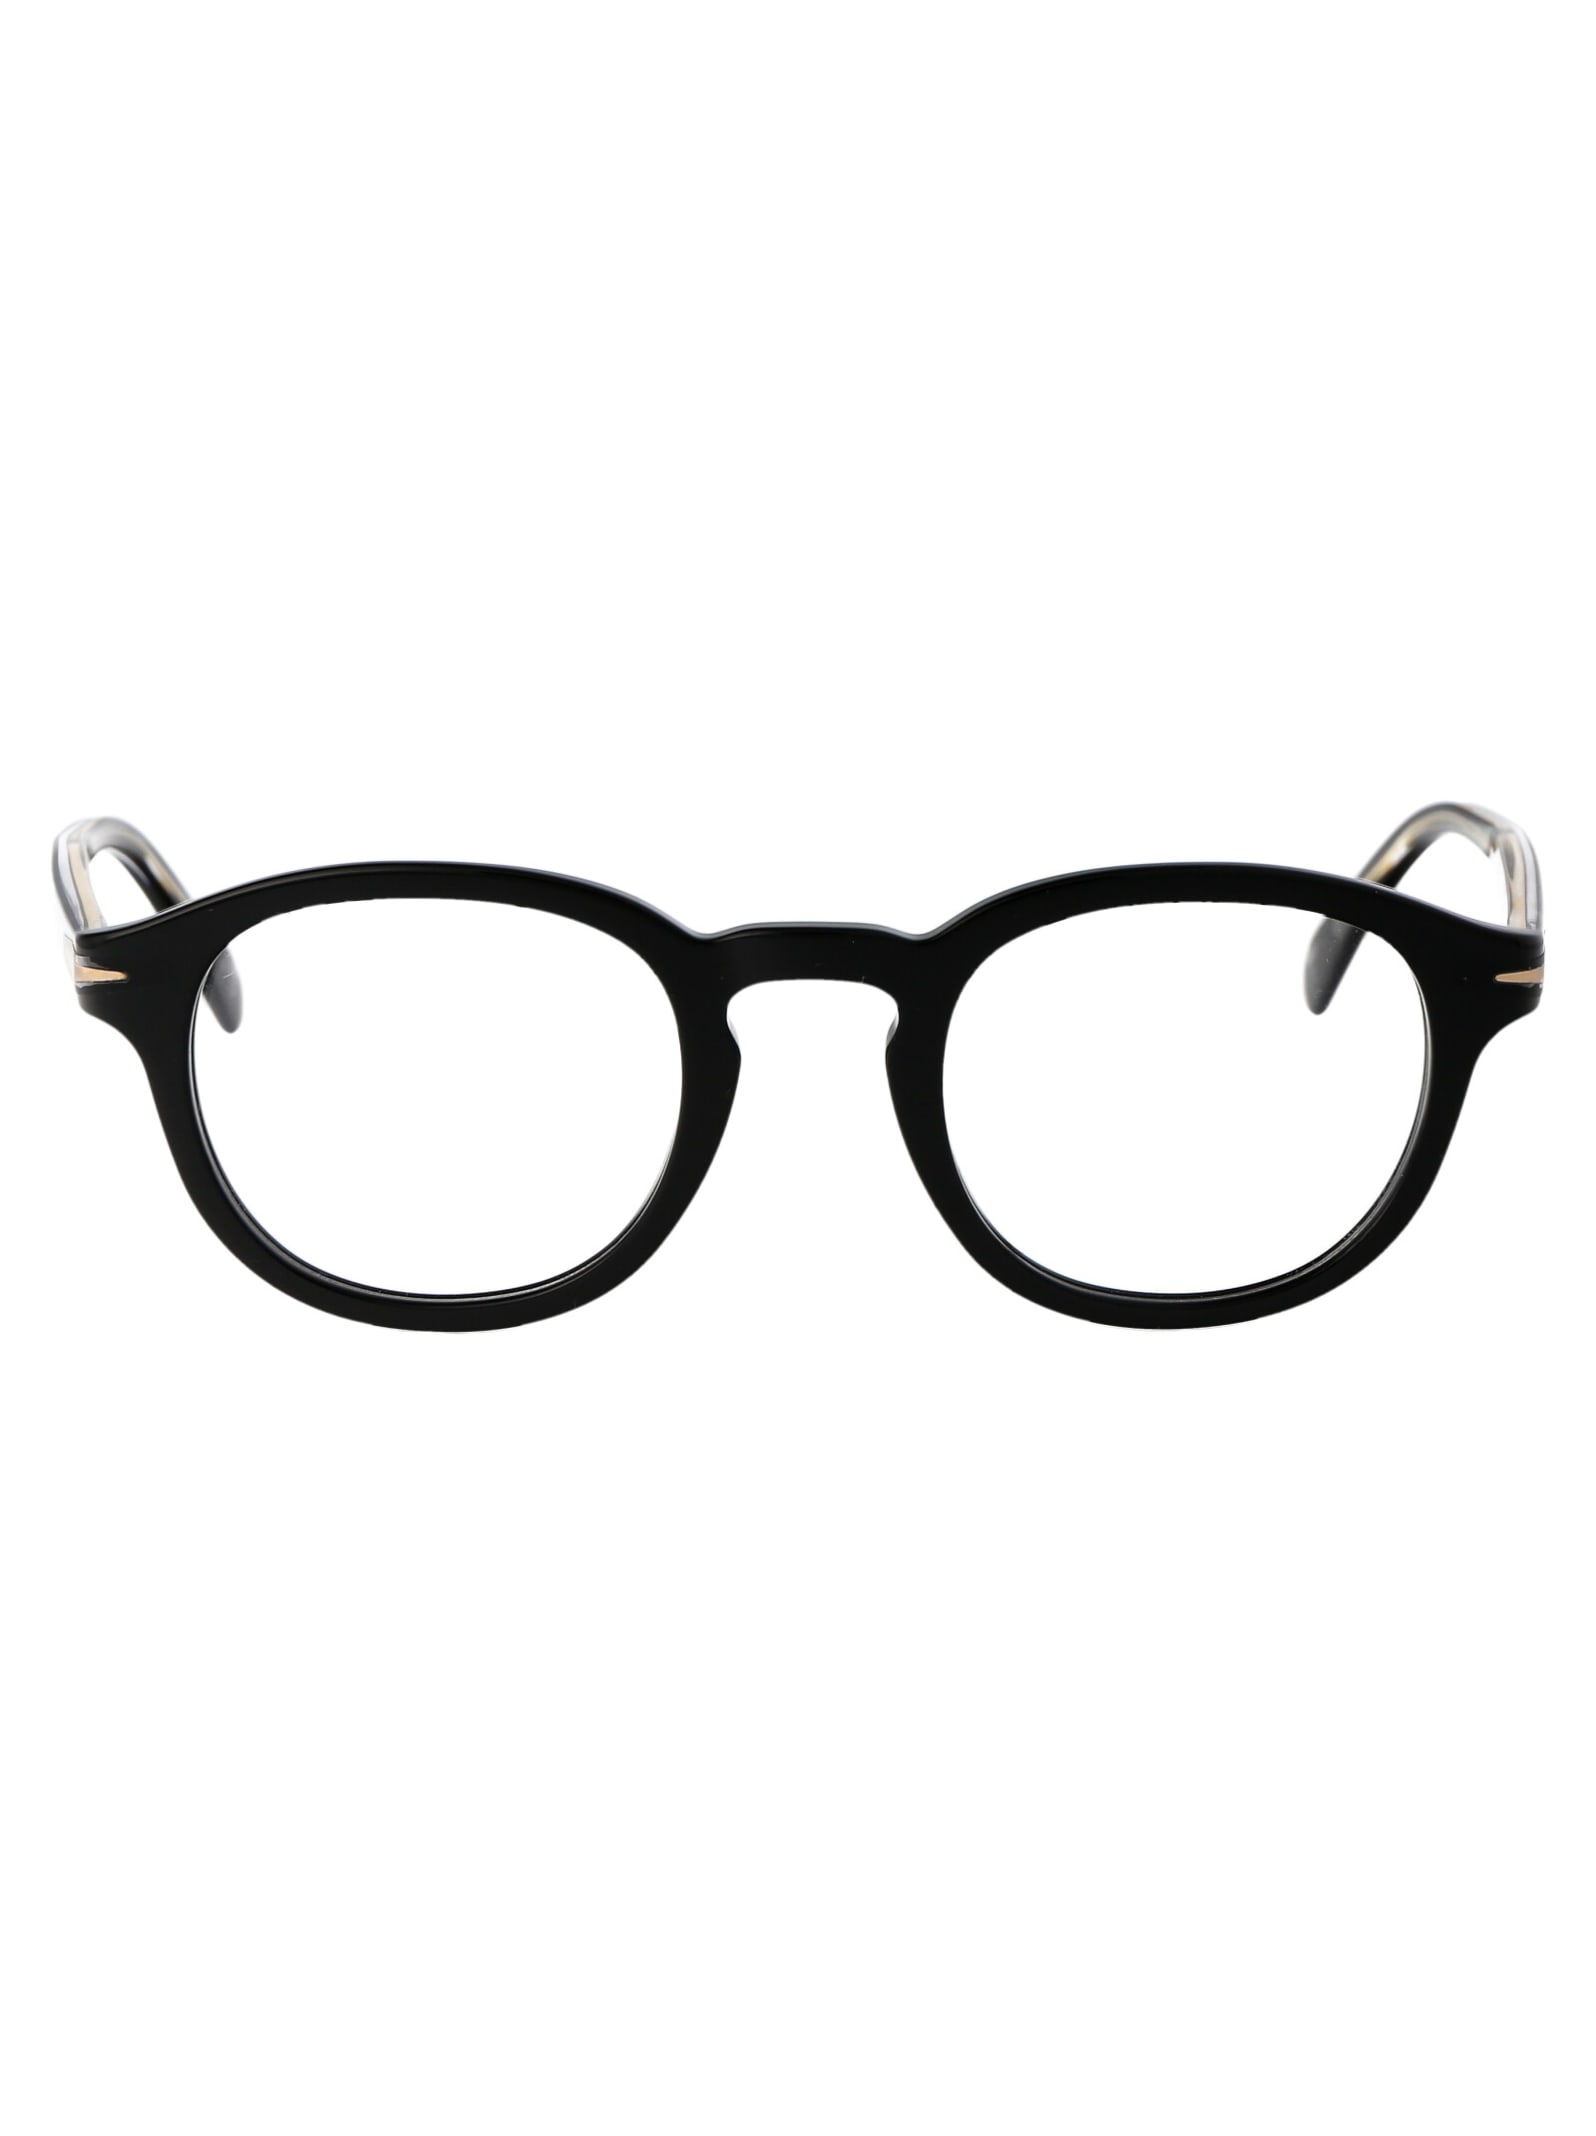 Db 7017 Glasses